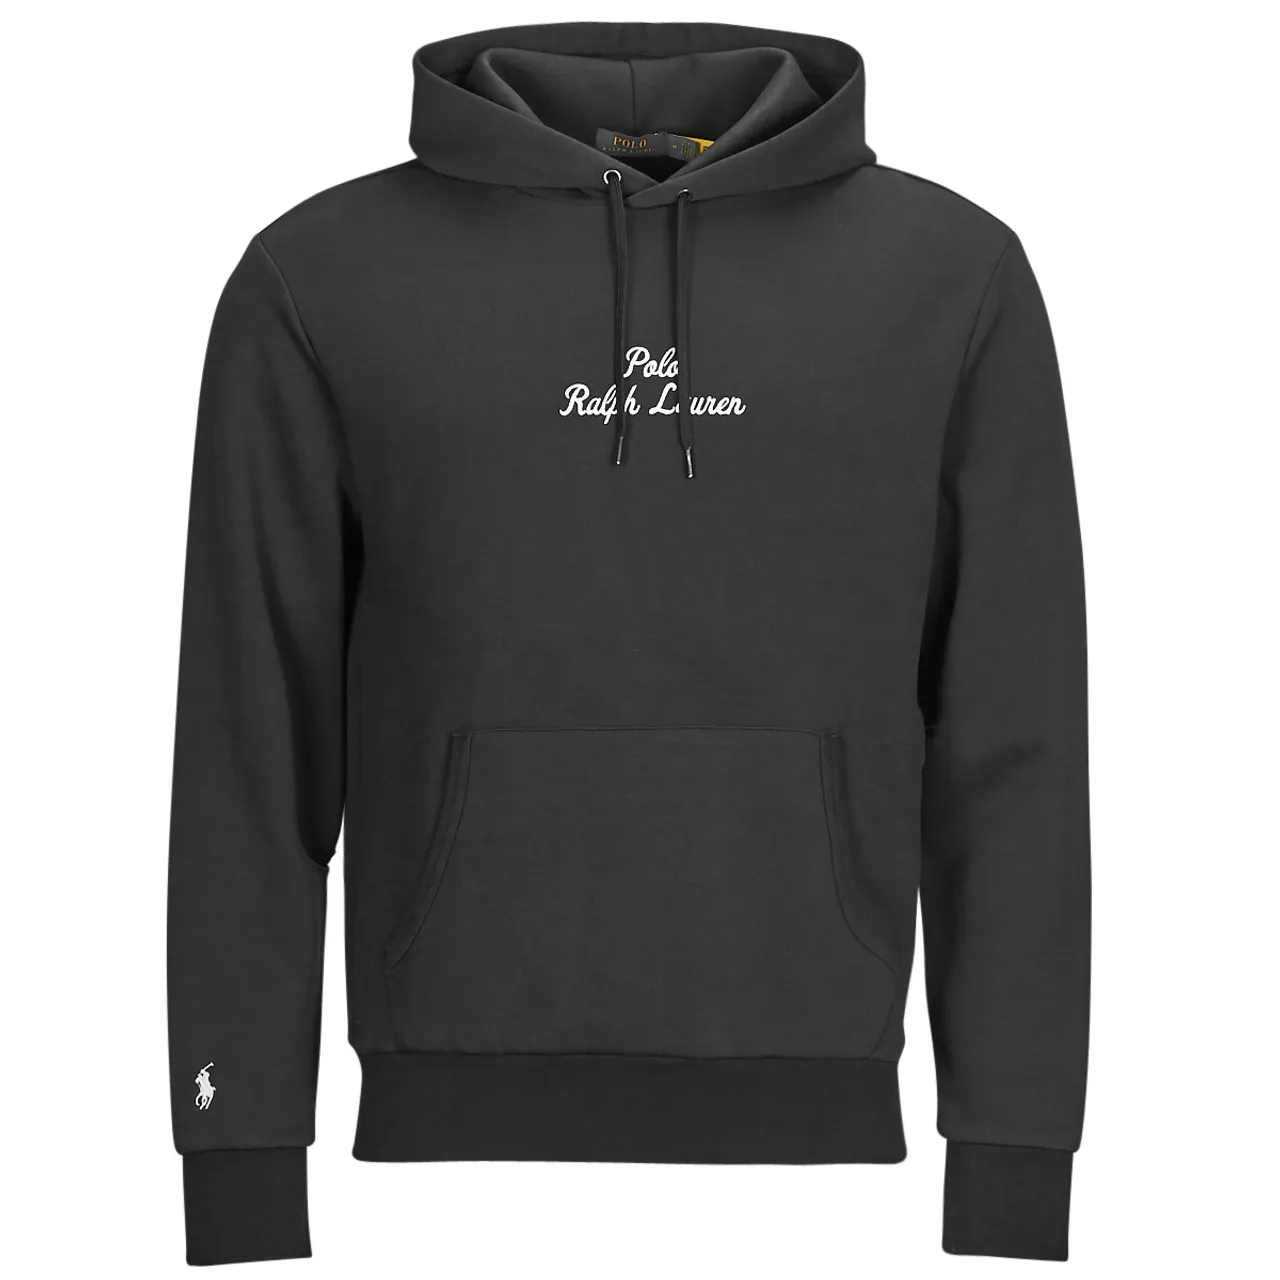 Polo Ralph Lauren  SWEATSHIRT BRODE EN DOUBLE KNIT TECH  men's Sweatshirt in Black